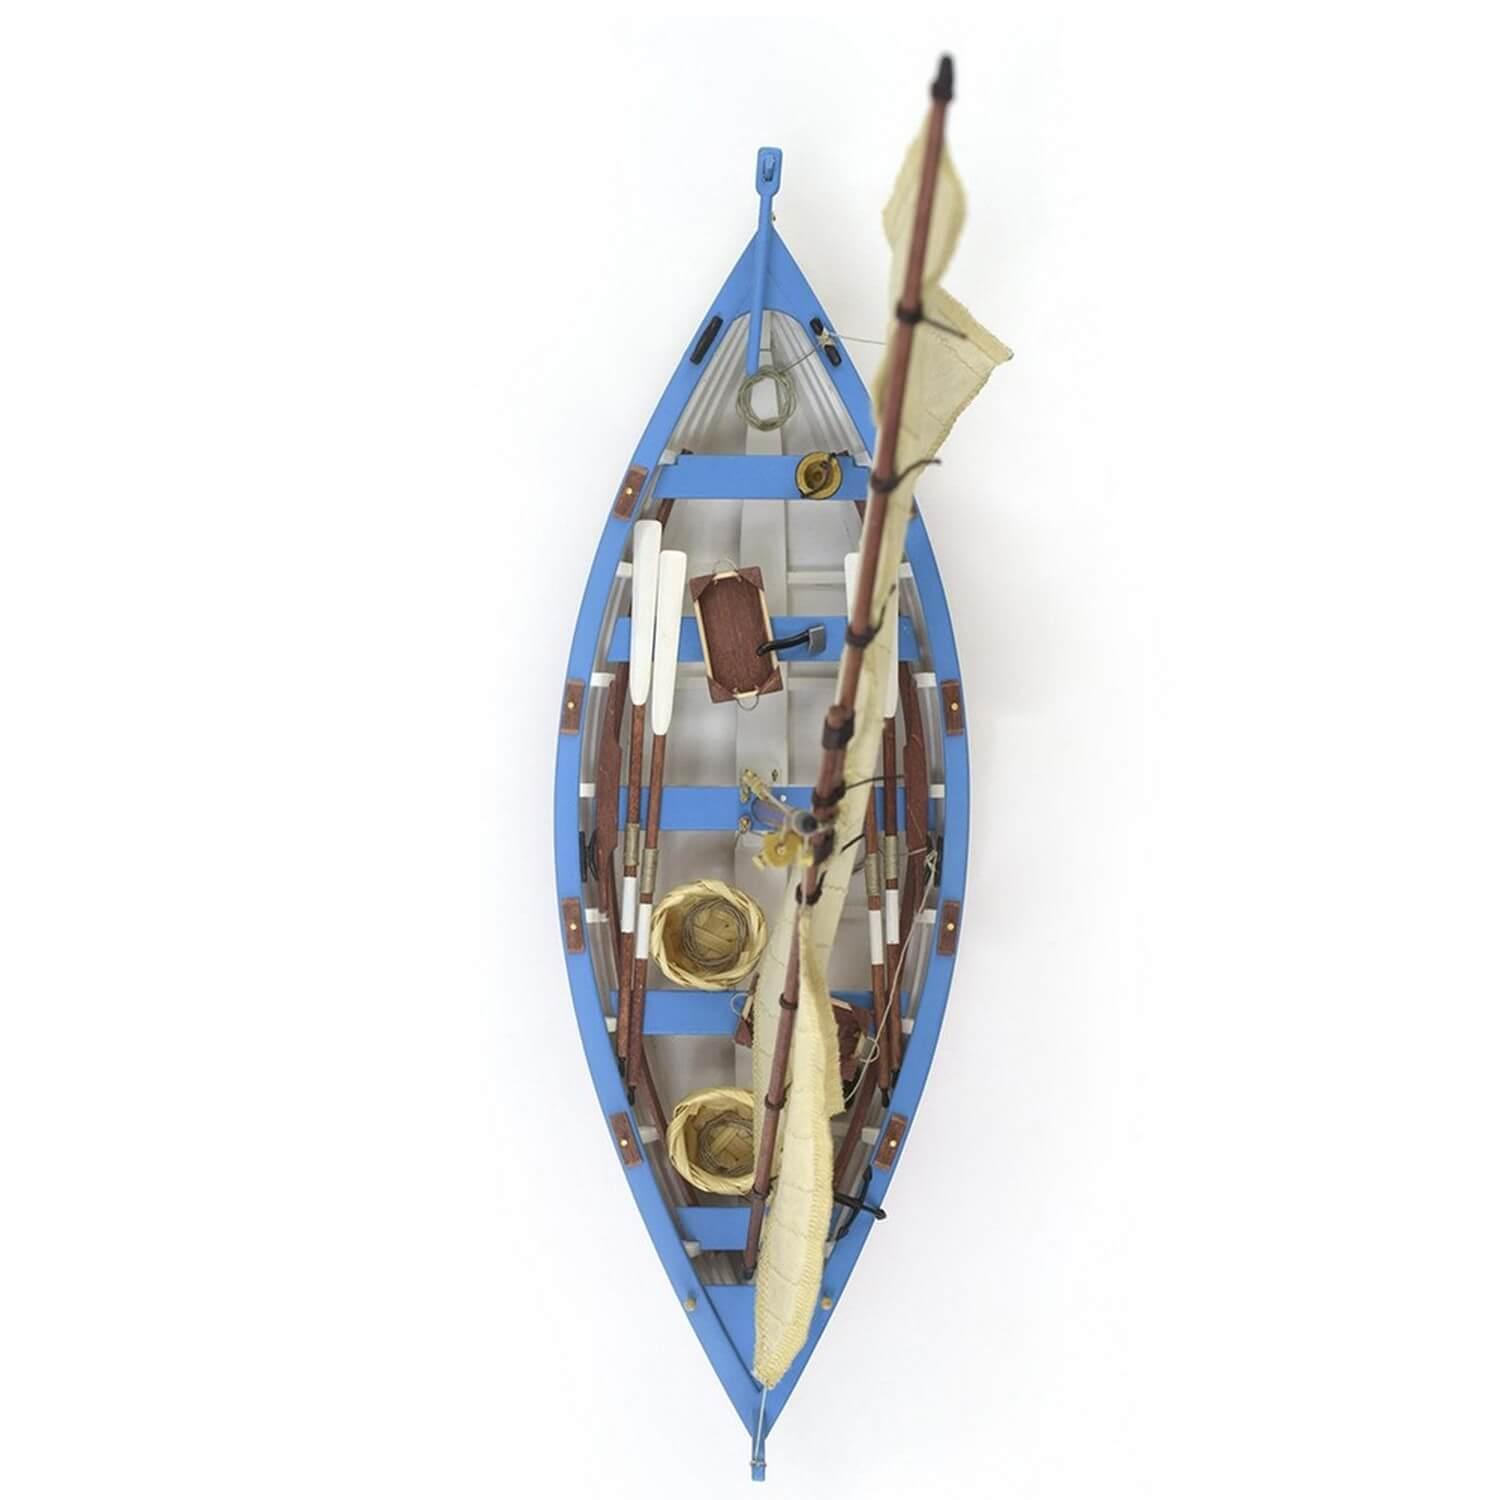 Peintures pour Modélisme Naval (II): Plus d'Ensembles Maquettes Bateaux